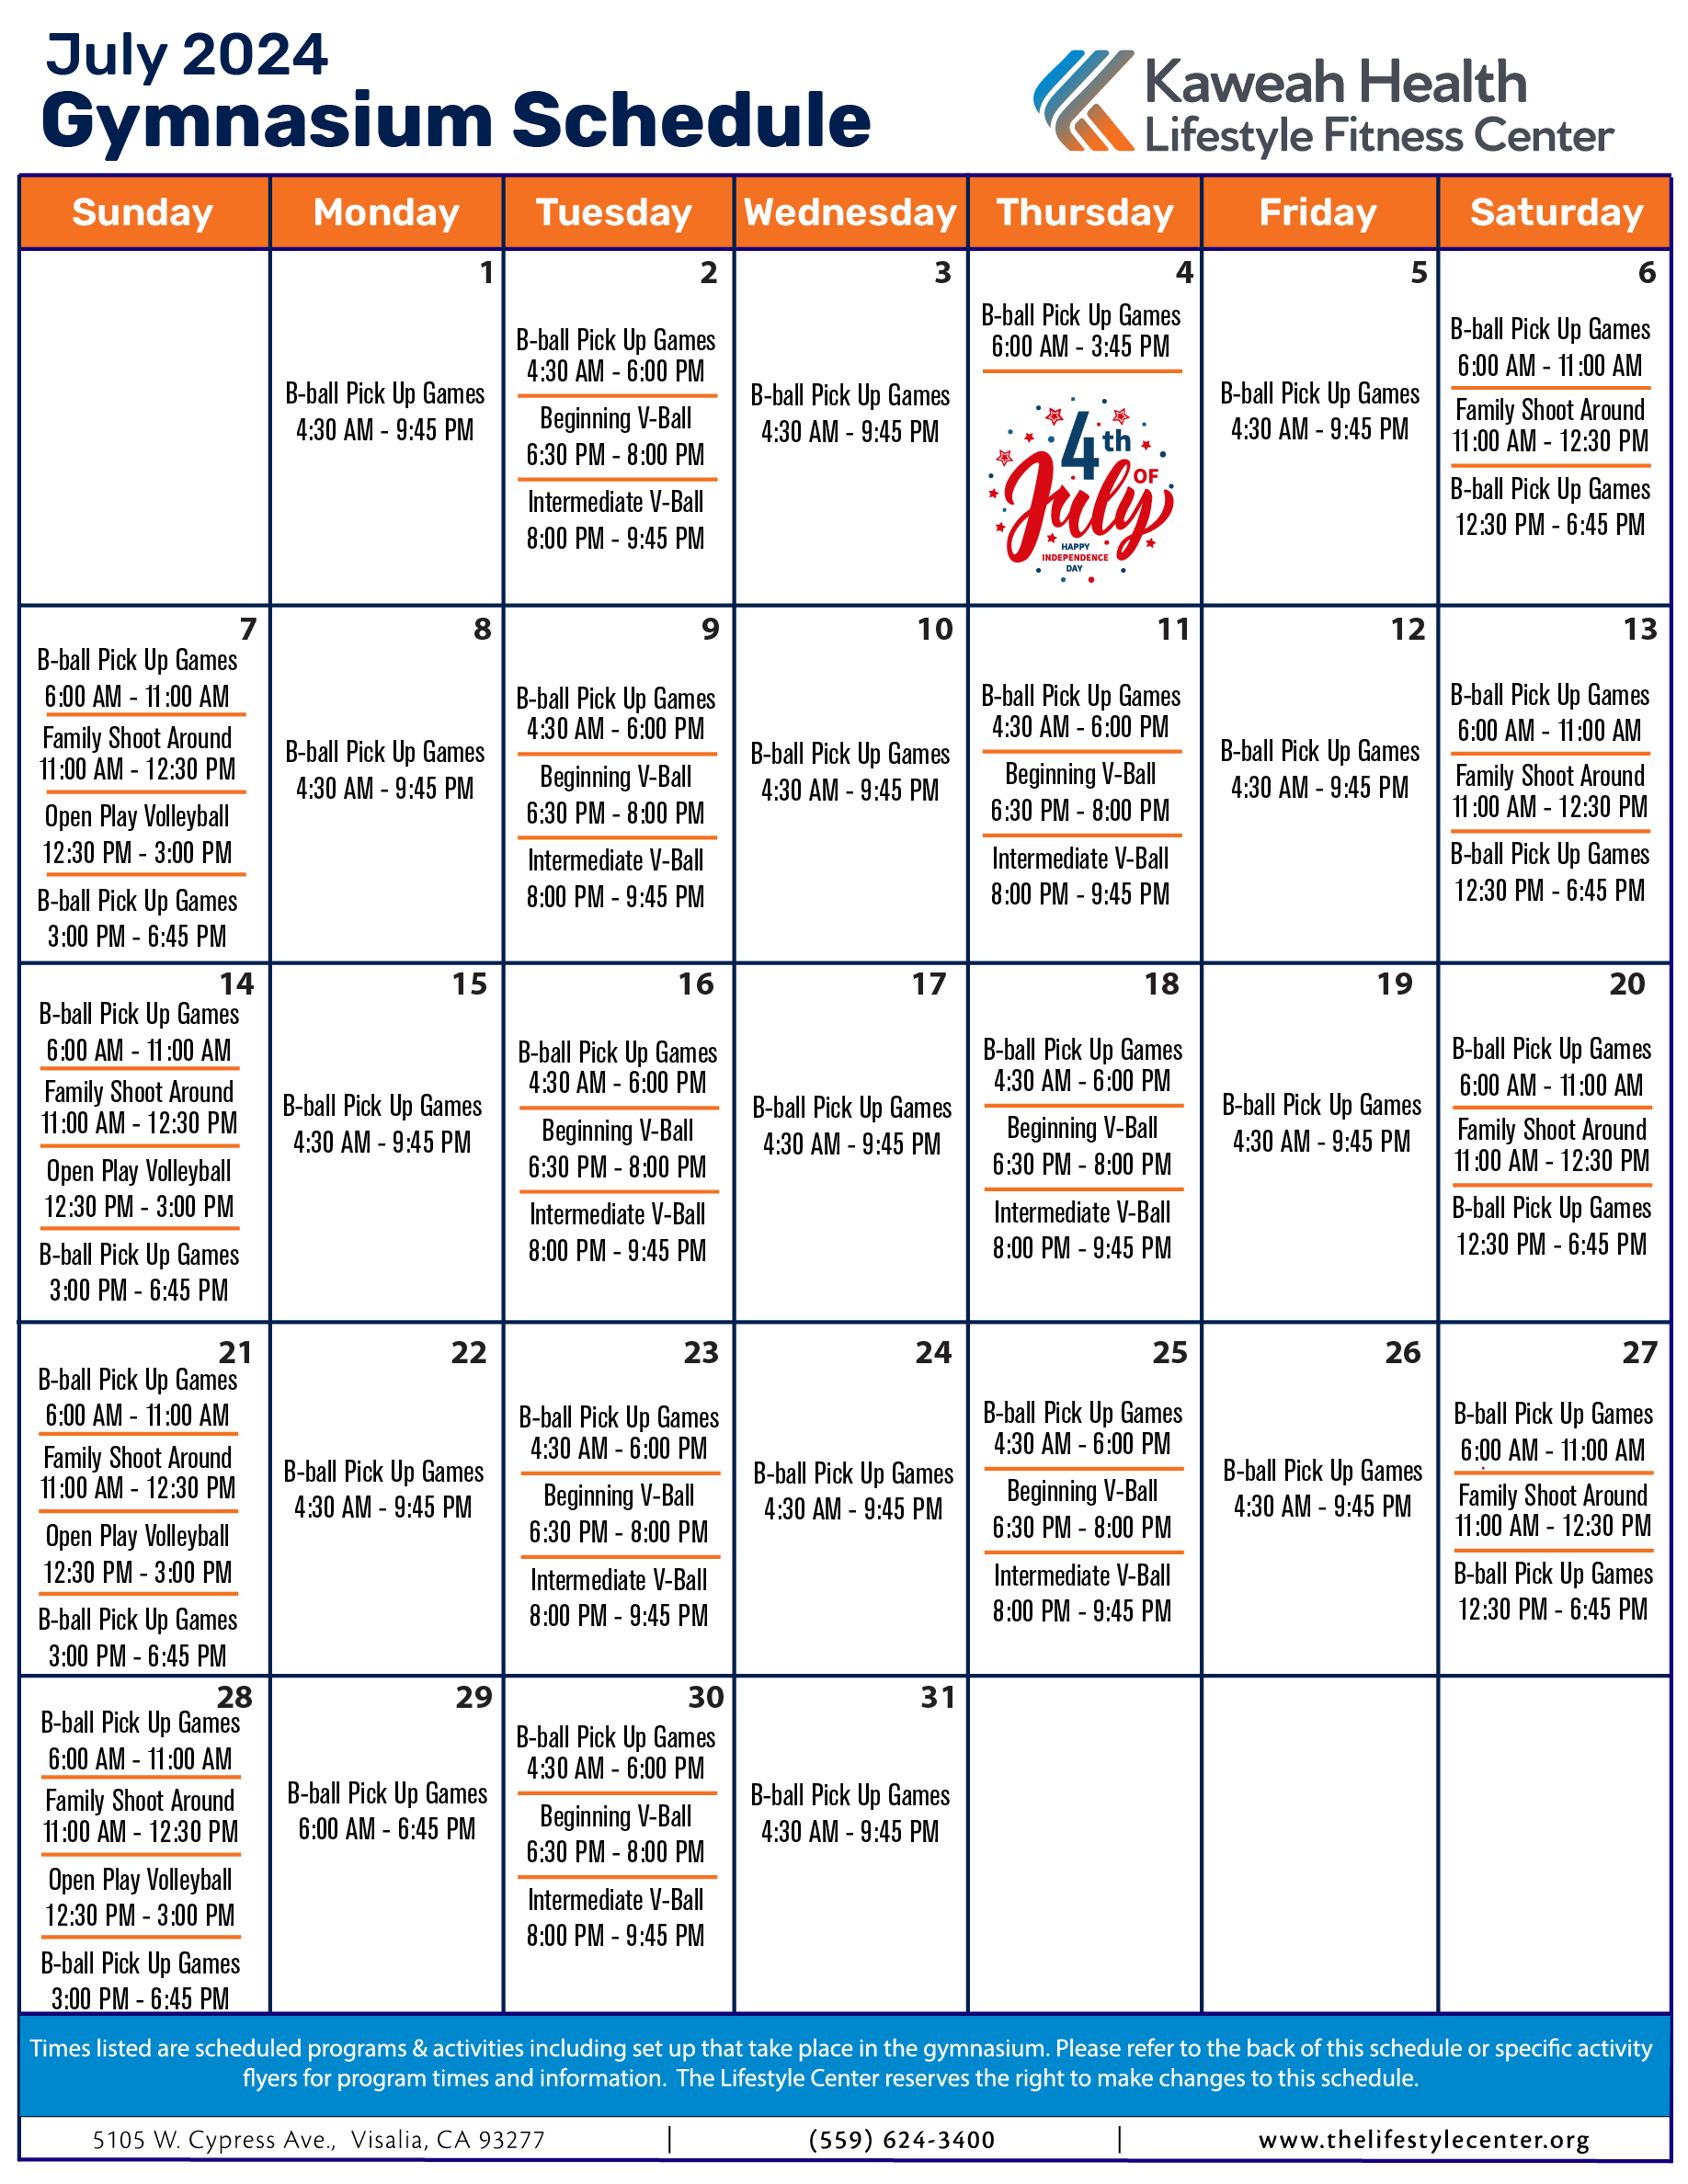 July 2024 Gymnasium schedule